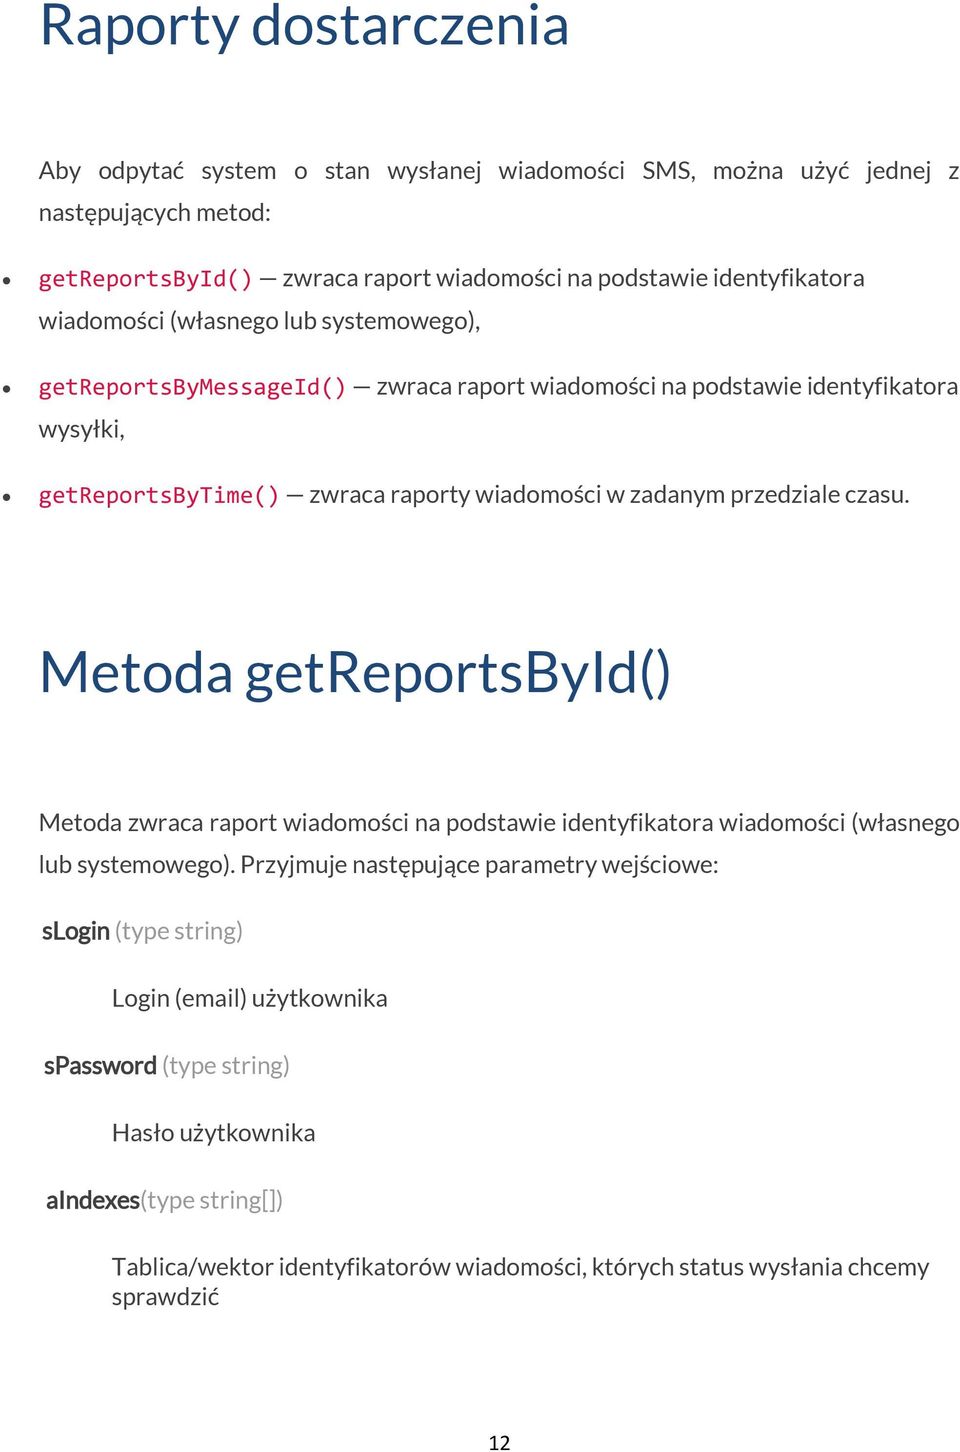 przedziale czasu. Metoda getreportsbyid() Metoda zwraca raport wiadomości na podstawie identyfikatora wiadomości (własnego lub systemowego).